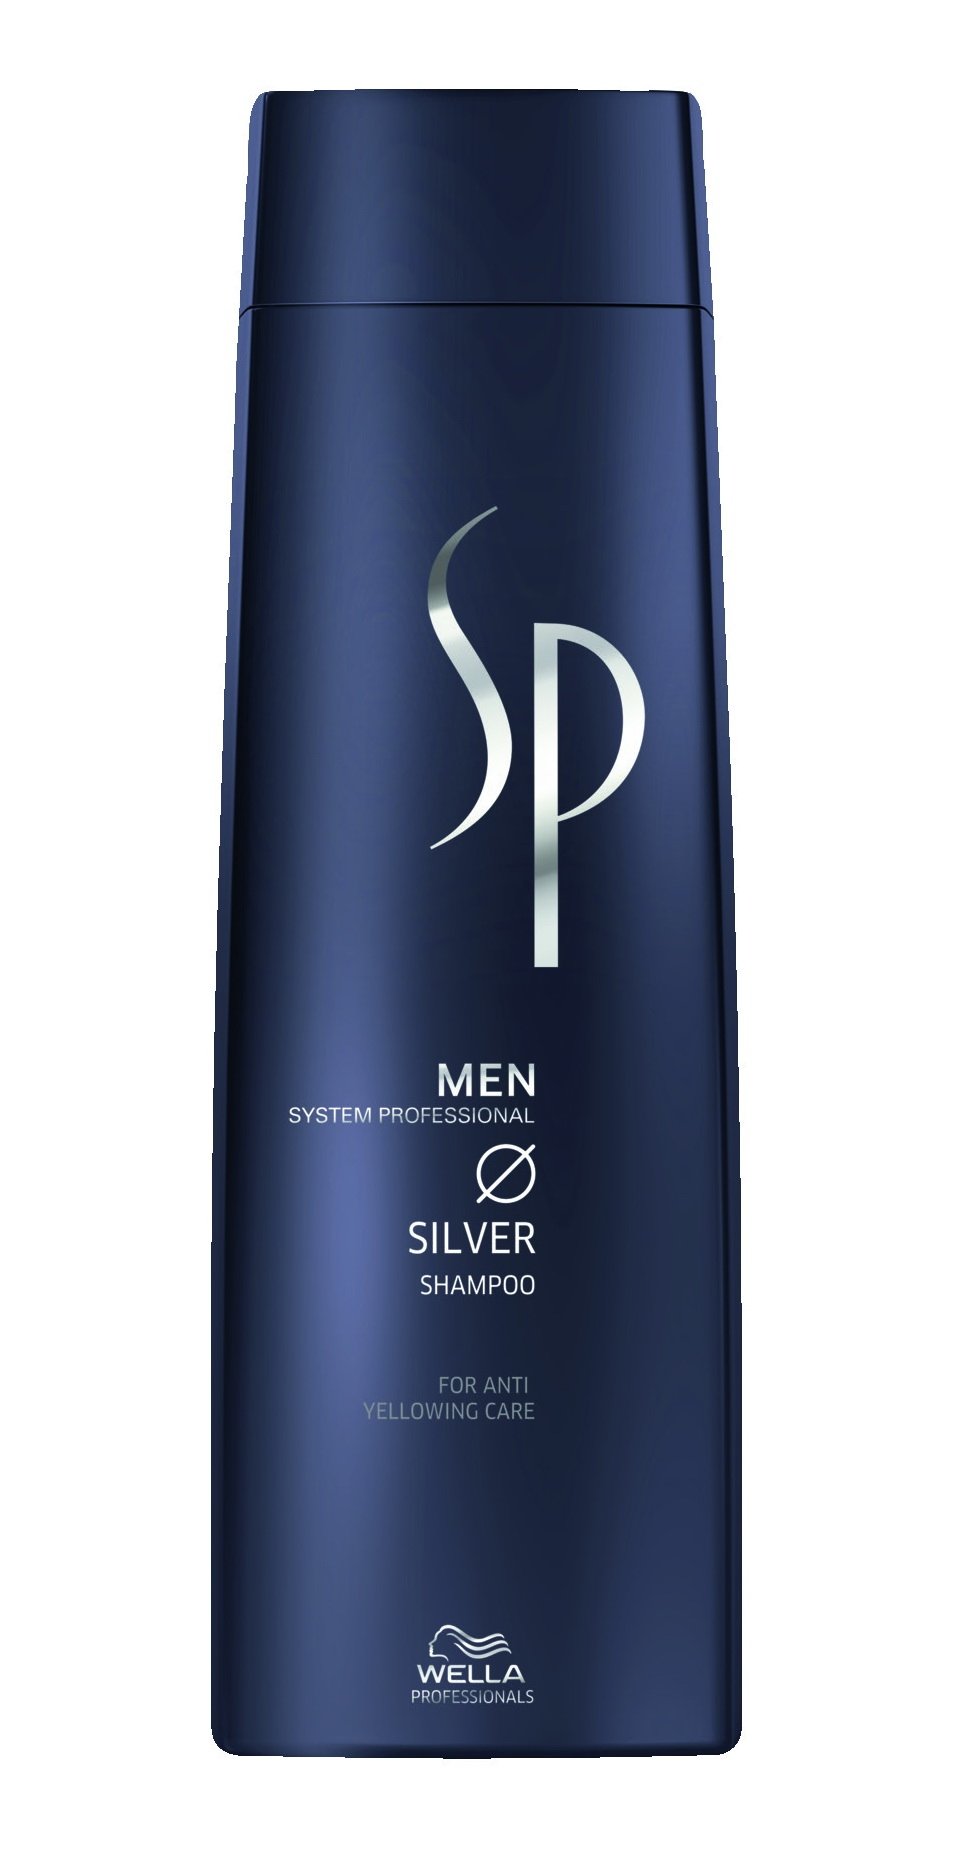 Шампуни для волос:  System Professional -  Шампунь с серебристым блеском Silver Shampoo (250 мл)